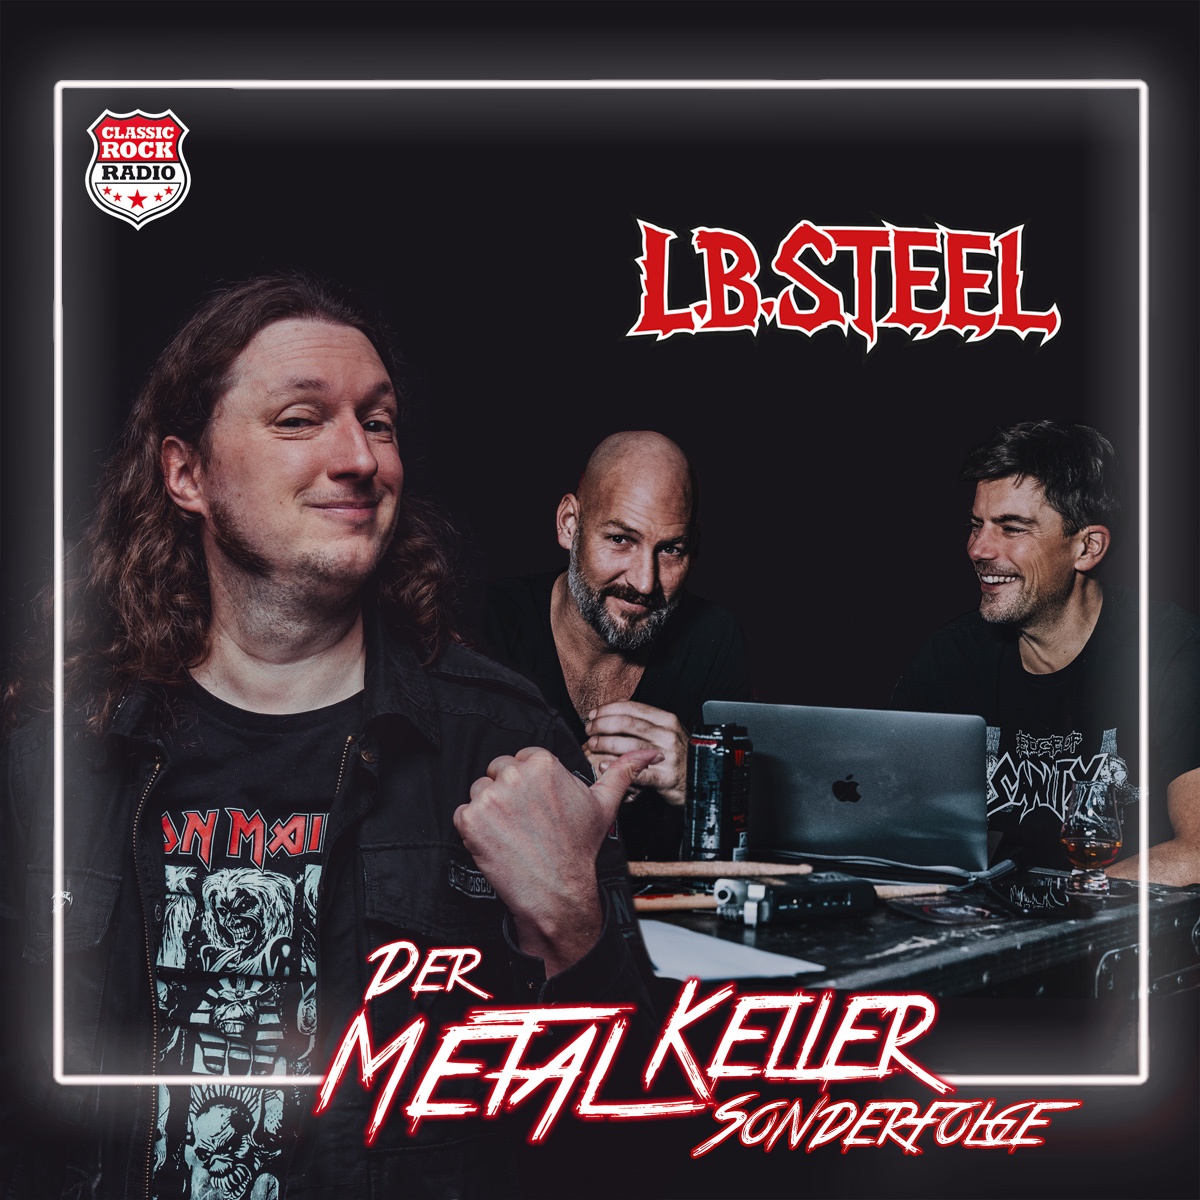 SONDERFOLGE - Randale und Rätsel (feat. L.B. Steel - Das Heavy Metal Hörspiel)